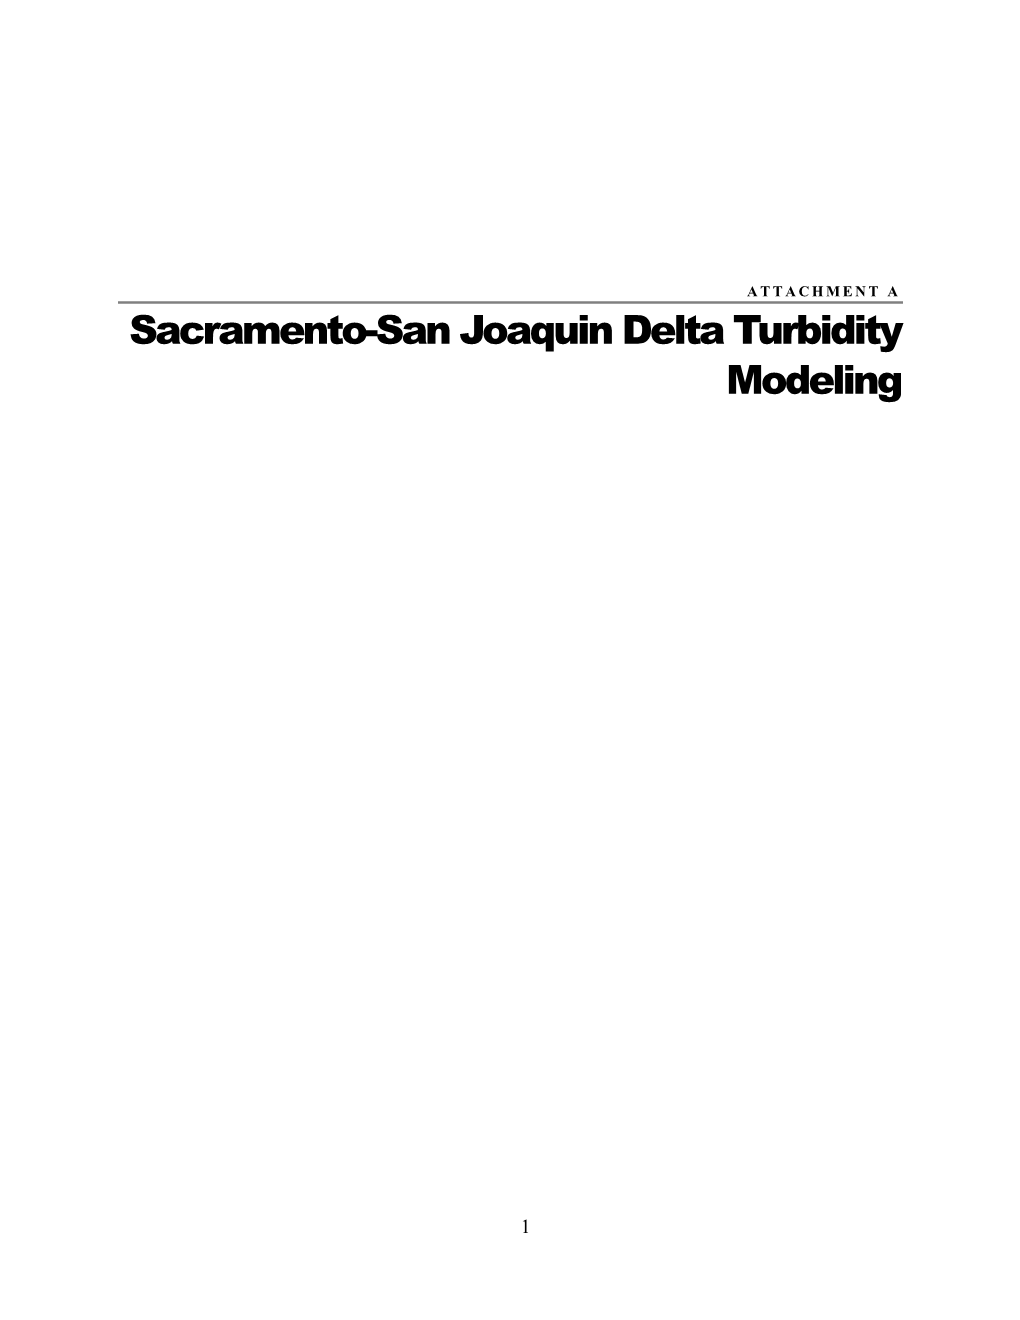 Sacramento-San Joaquin Delta Turbidity Modeling